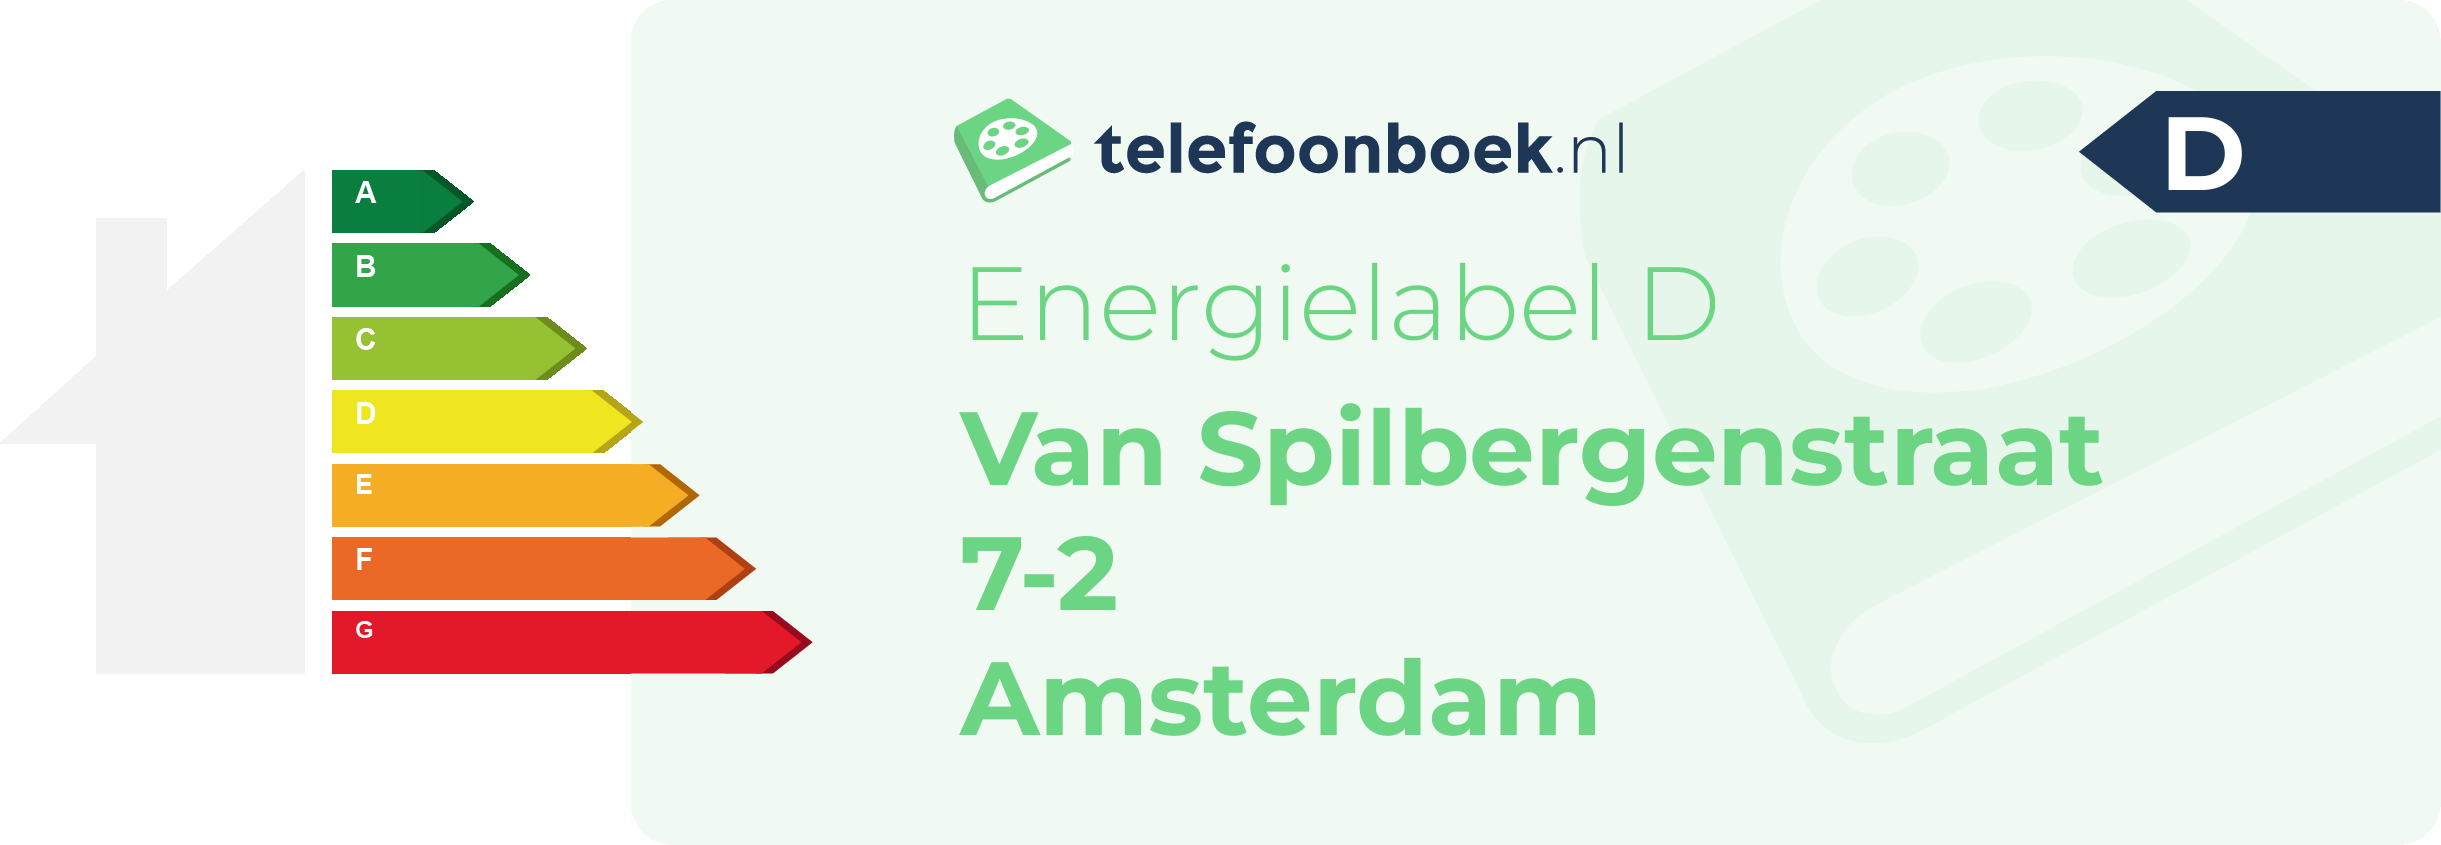 Energielabel Van Spilbergenstraat 7-2 Amsterdam